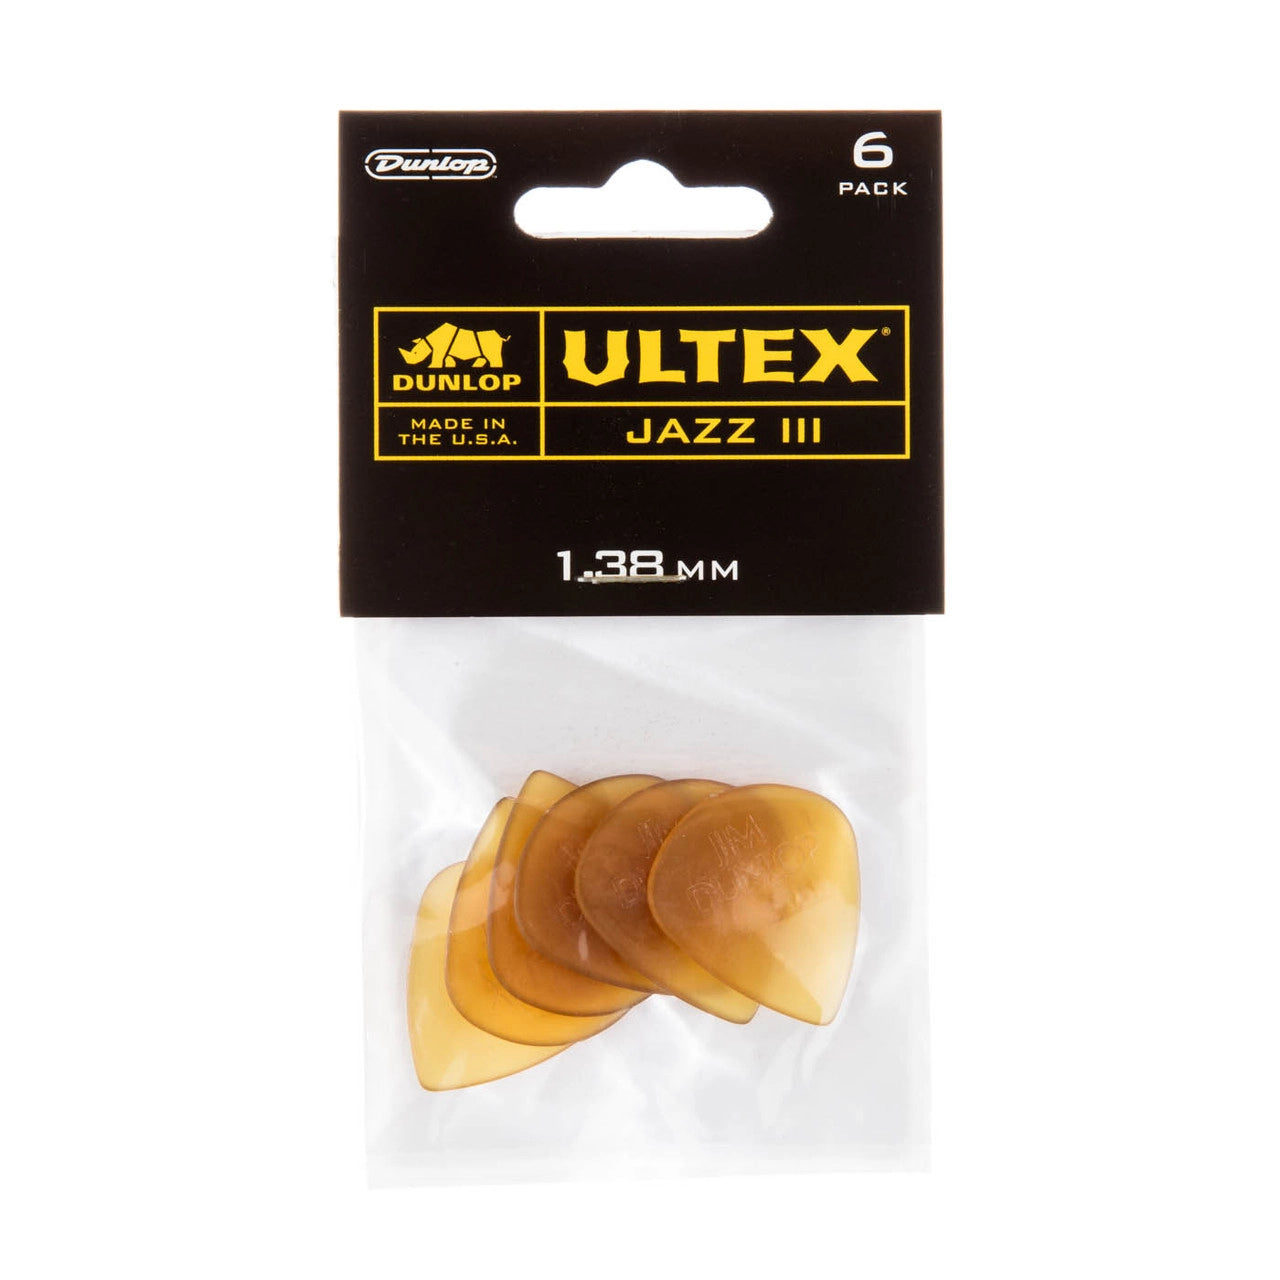 Dunlop Ultex Jazz III 1.38mm Guitar Pick 6 Pack